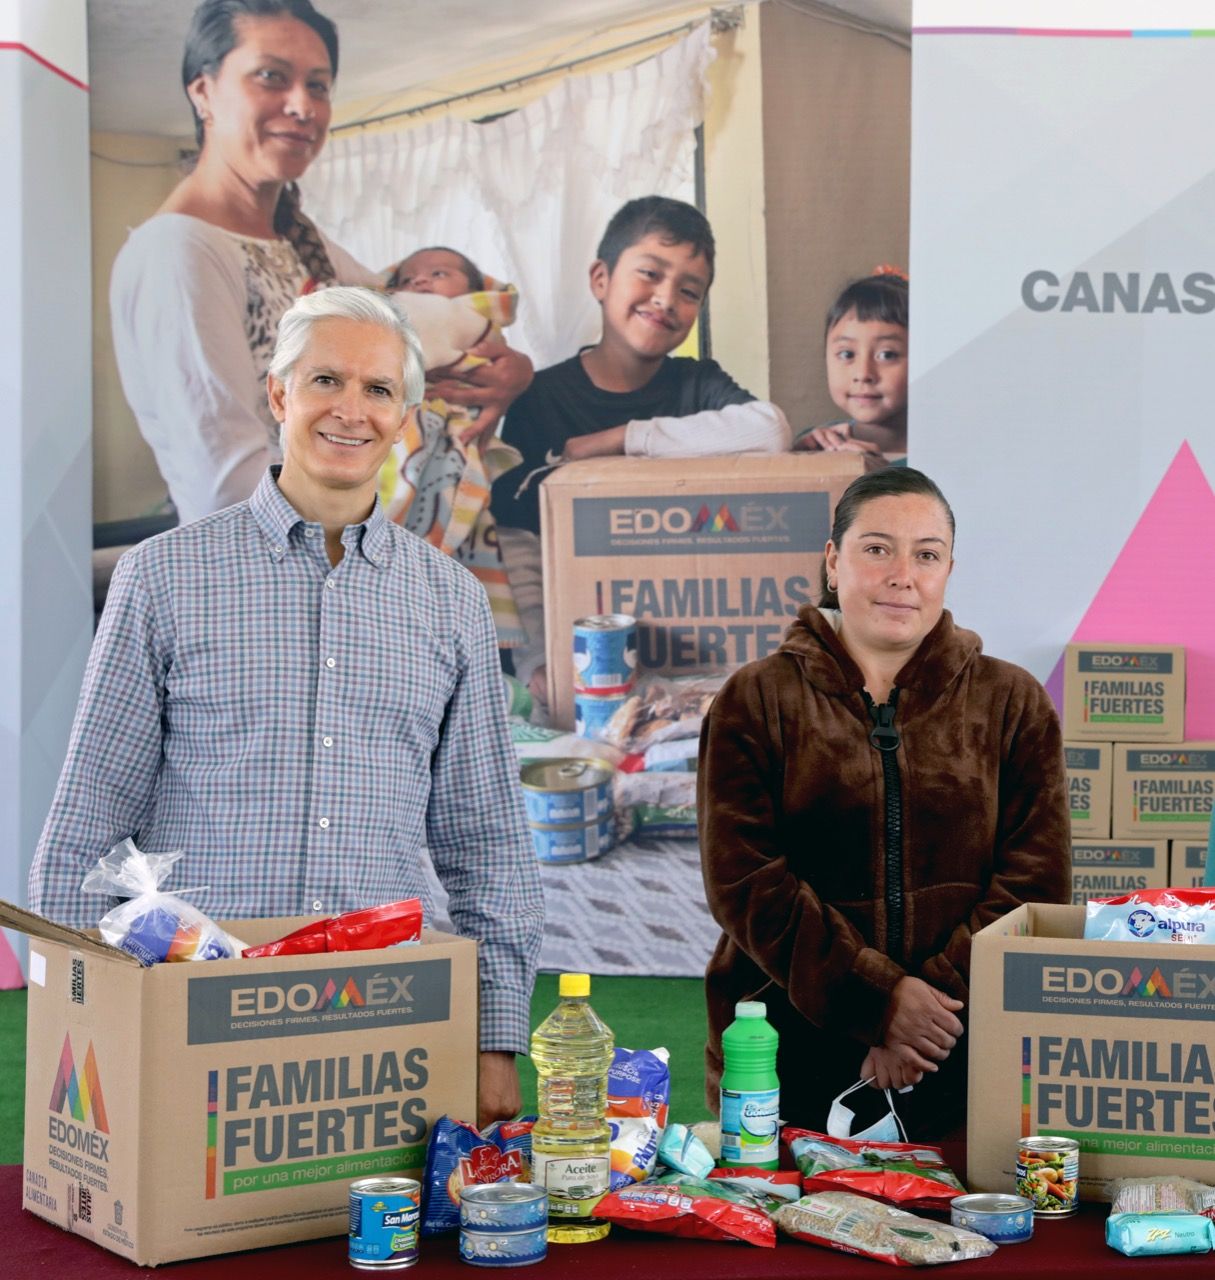 Con la entrega de canastas alimentarias apoyamos a la economía familiar y se promueve una alimentación sana para los mexiquenses: Alfredo del Mazo